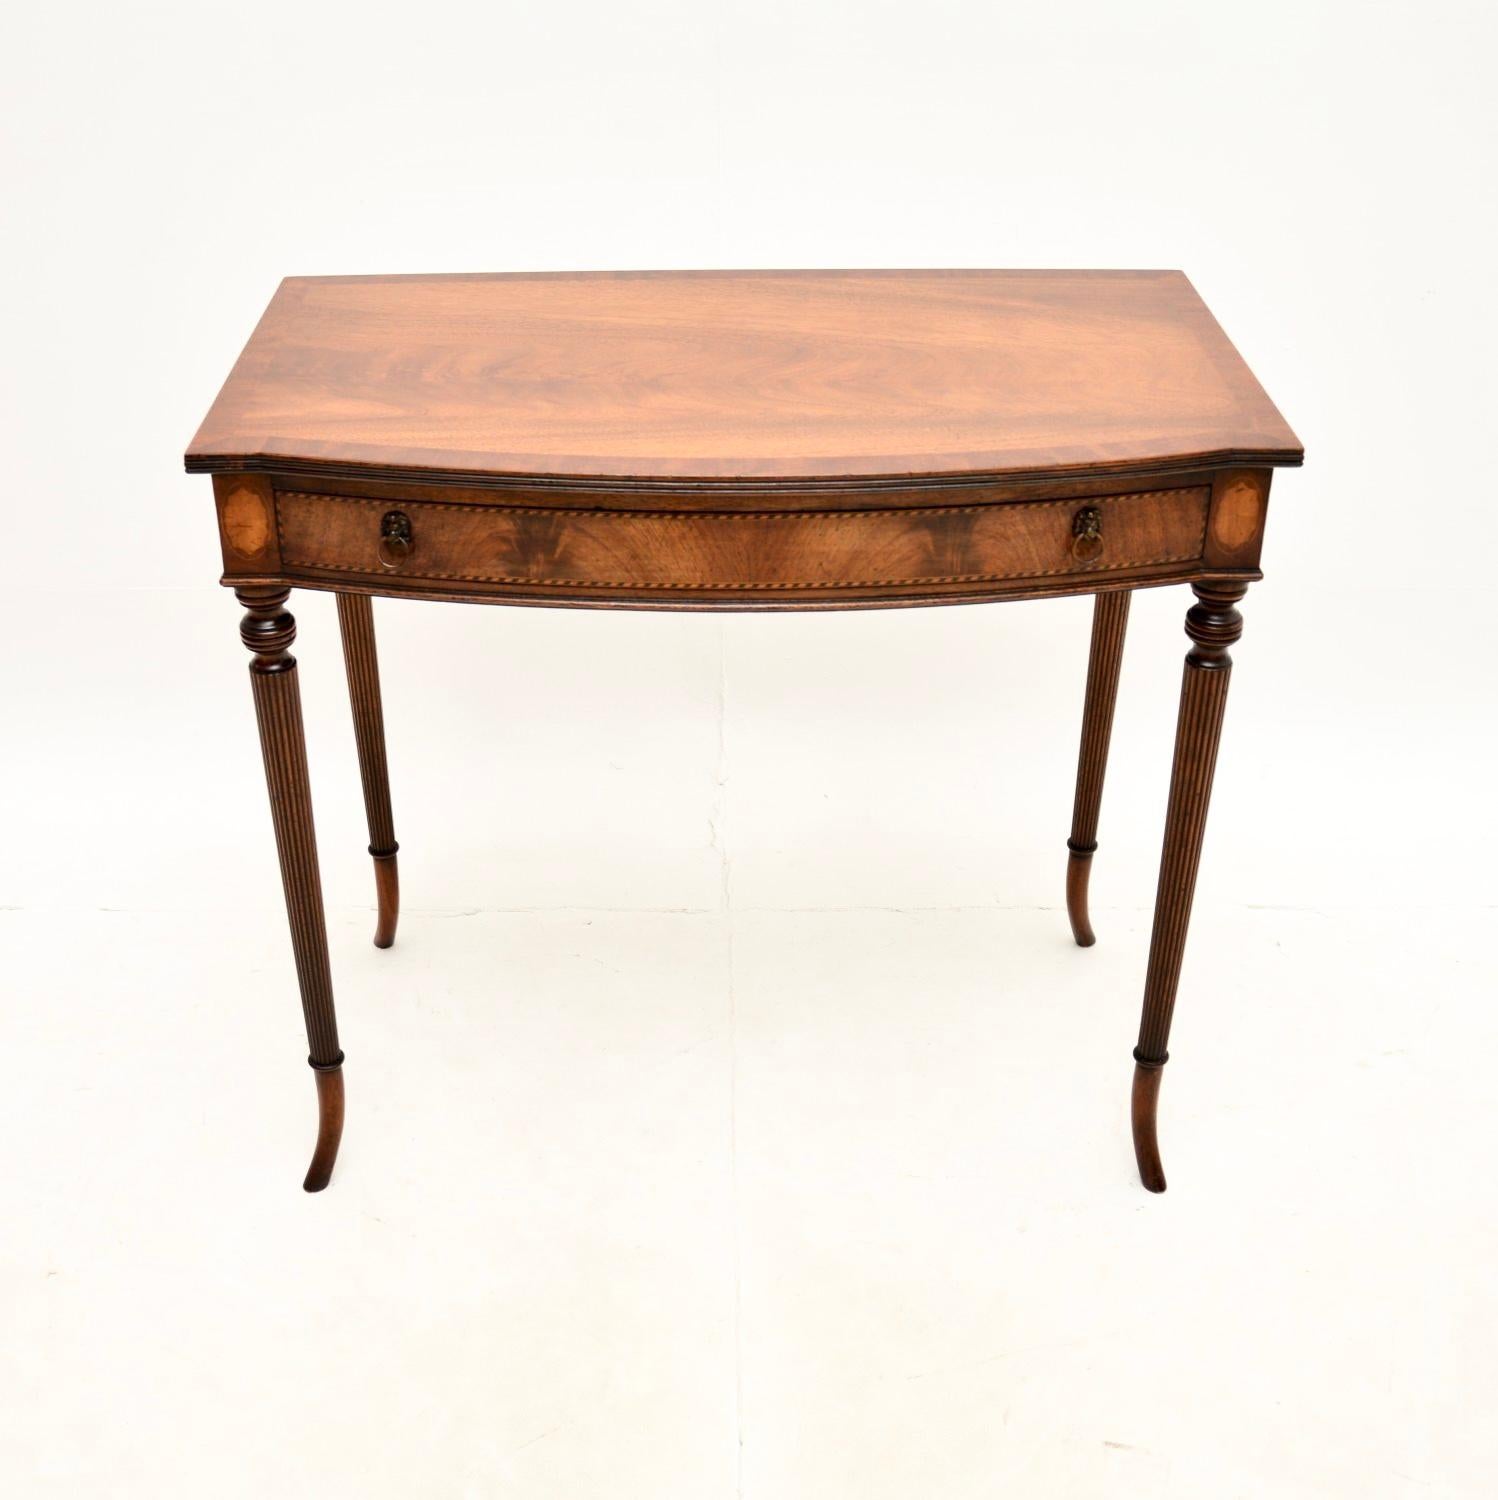 Une belle et élégante table d'écriture / d'appoint ancienne. Il a été fabriqué en Angleterre, il date des années 1920 environ.

Il est d'une très grande qualité et d'un design magnifique et utile. Il s'agit d'une taille idéale pour servir de petit